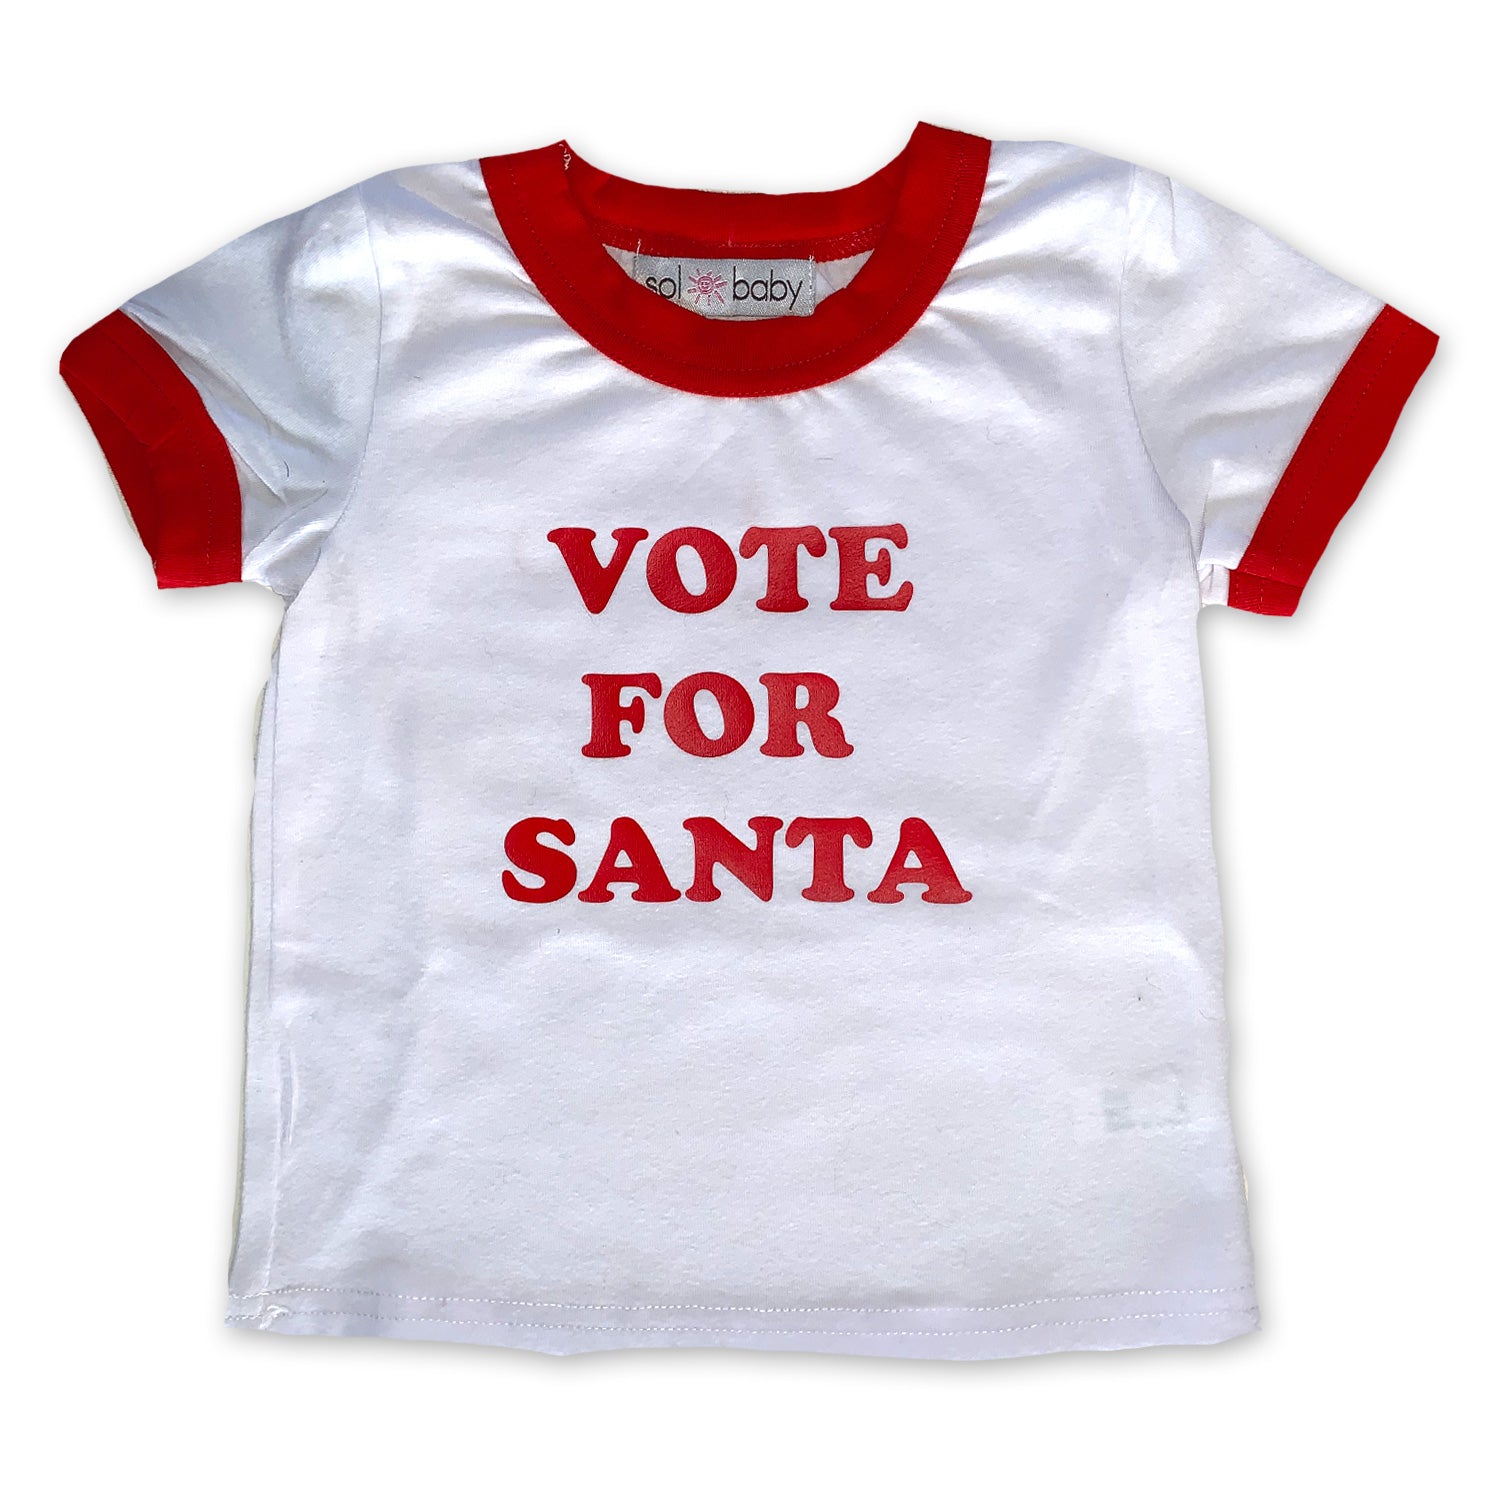 Vote for Santa Ringer tee